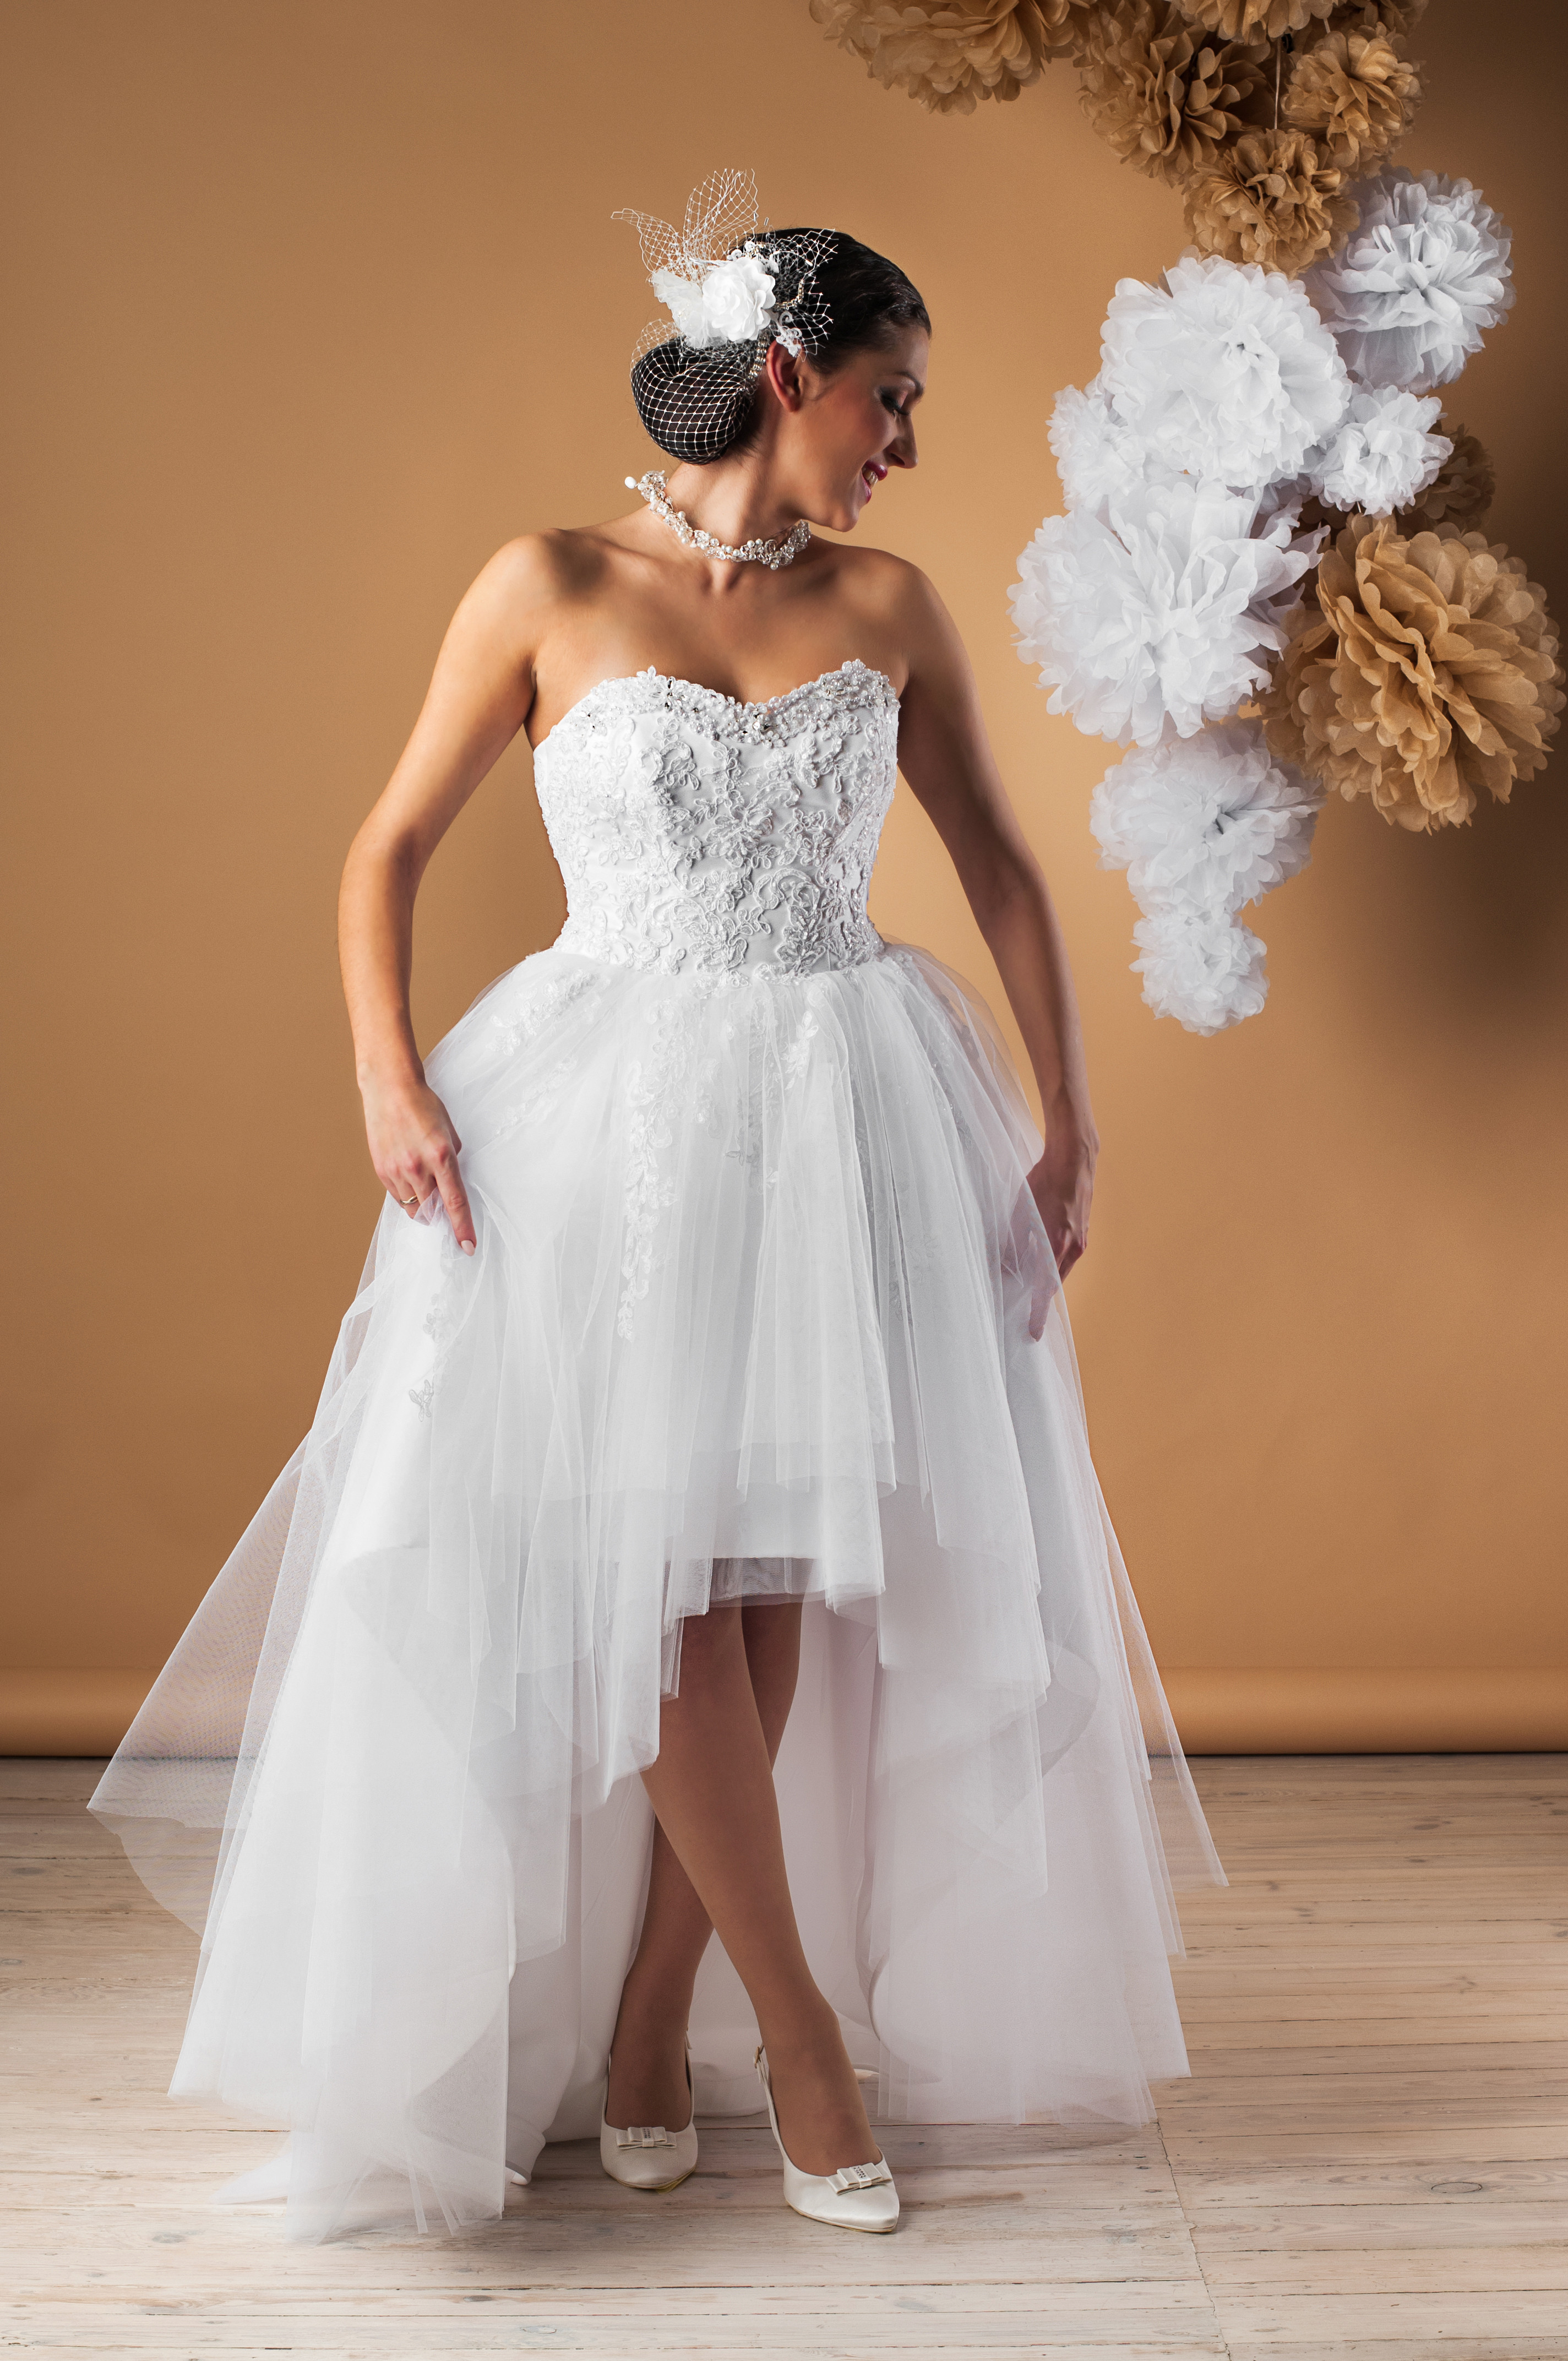 Hochzeitskleid Vorne Kurz Hinten Lang
 Die schönsten Brautkleider vorne kurz hinten lang online